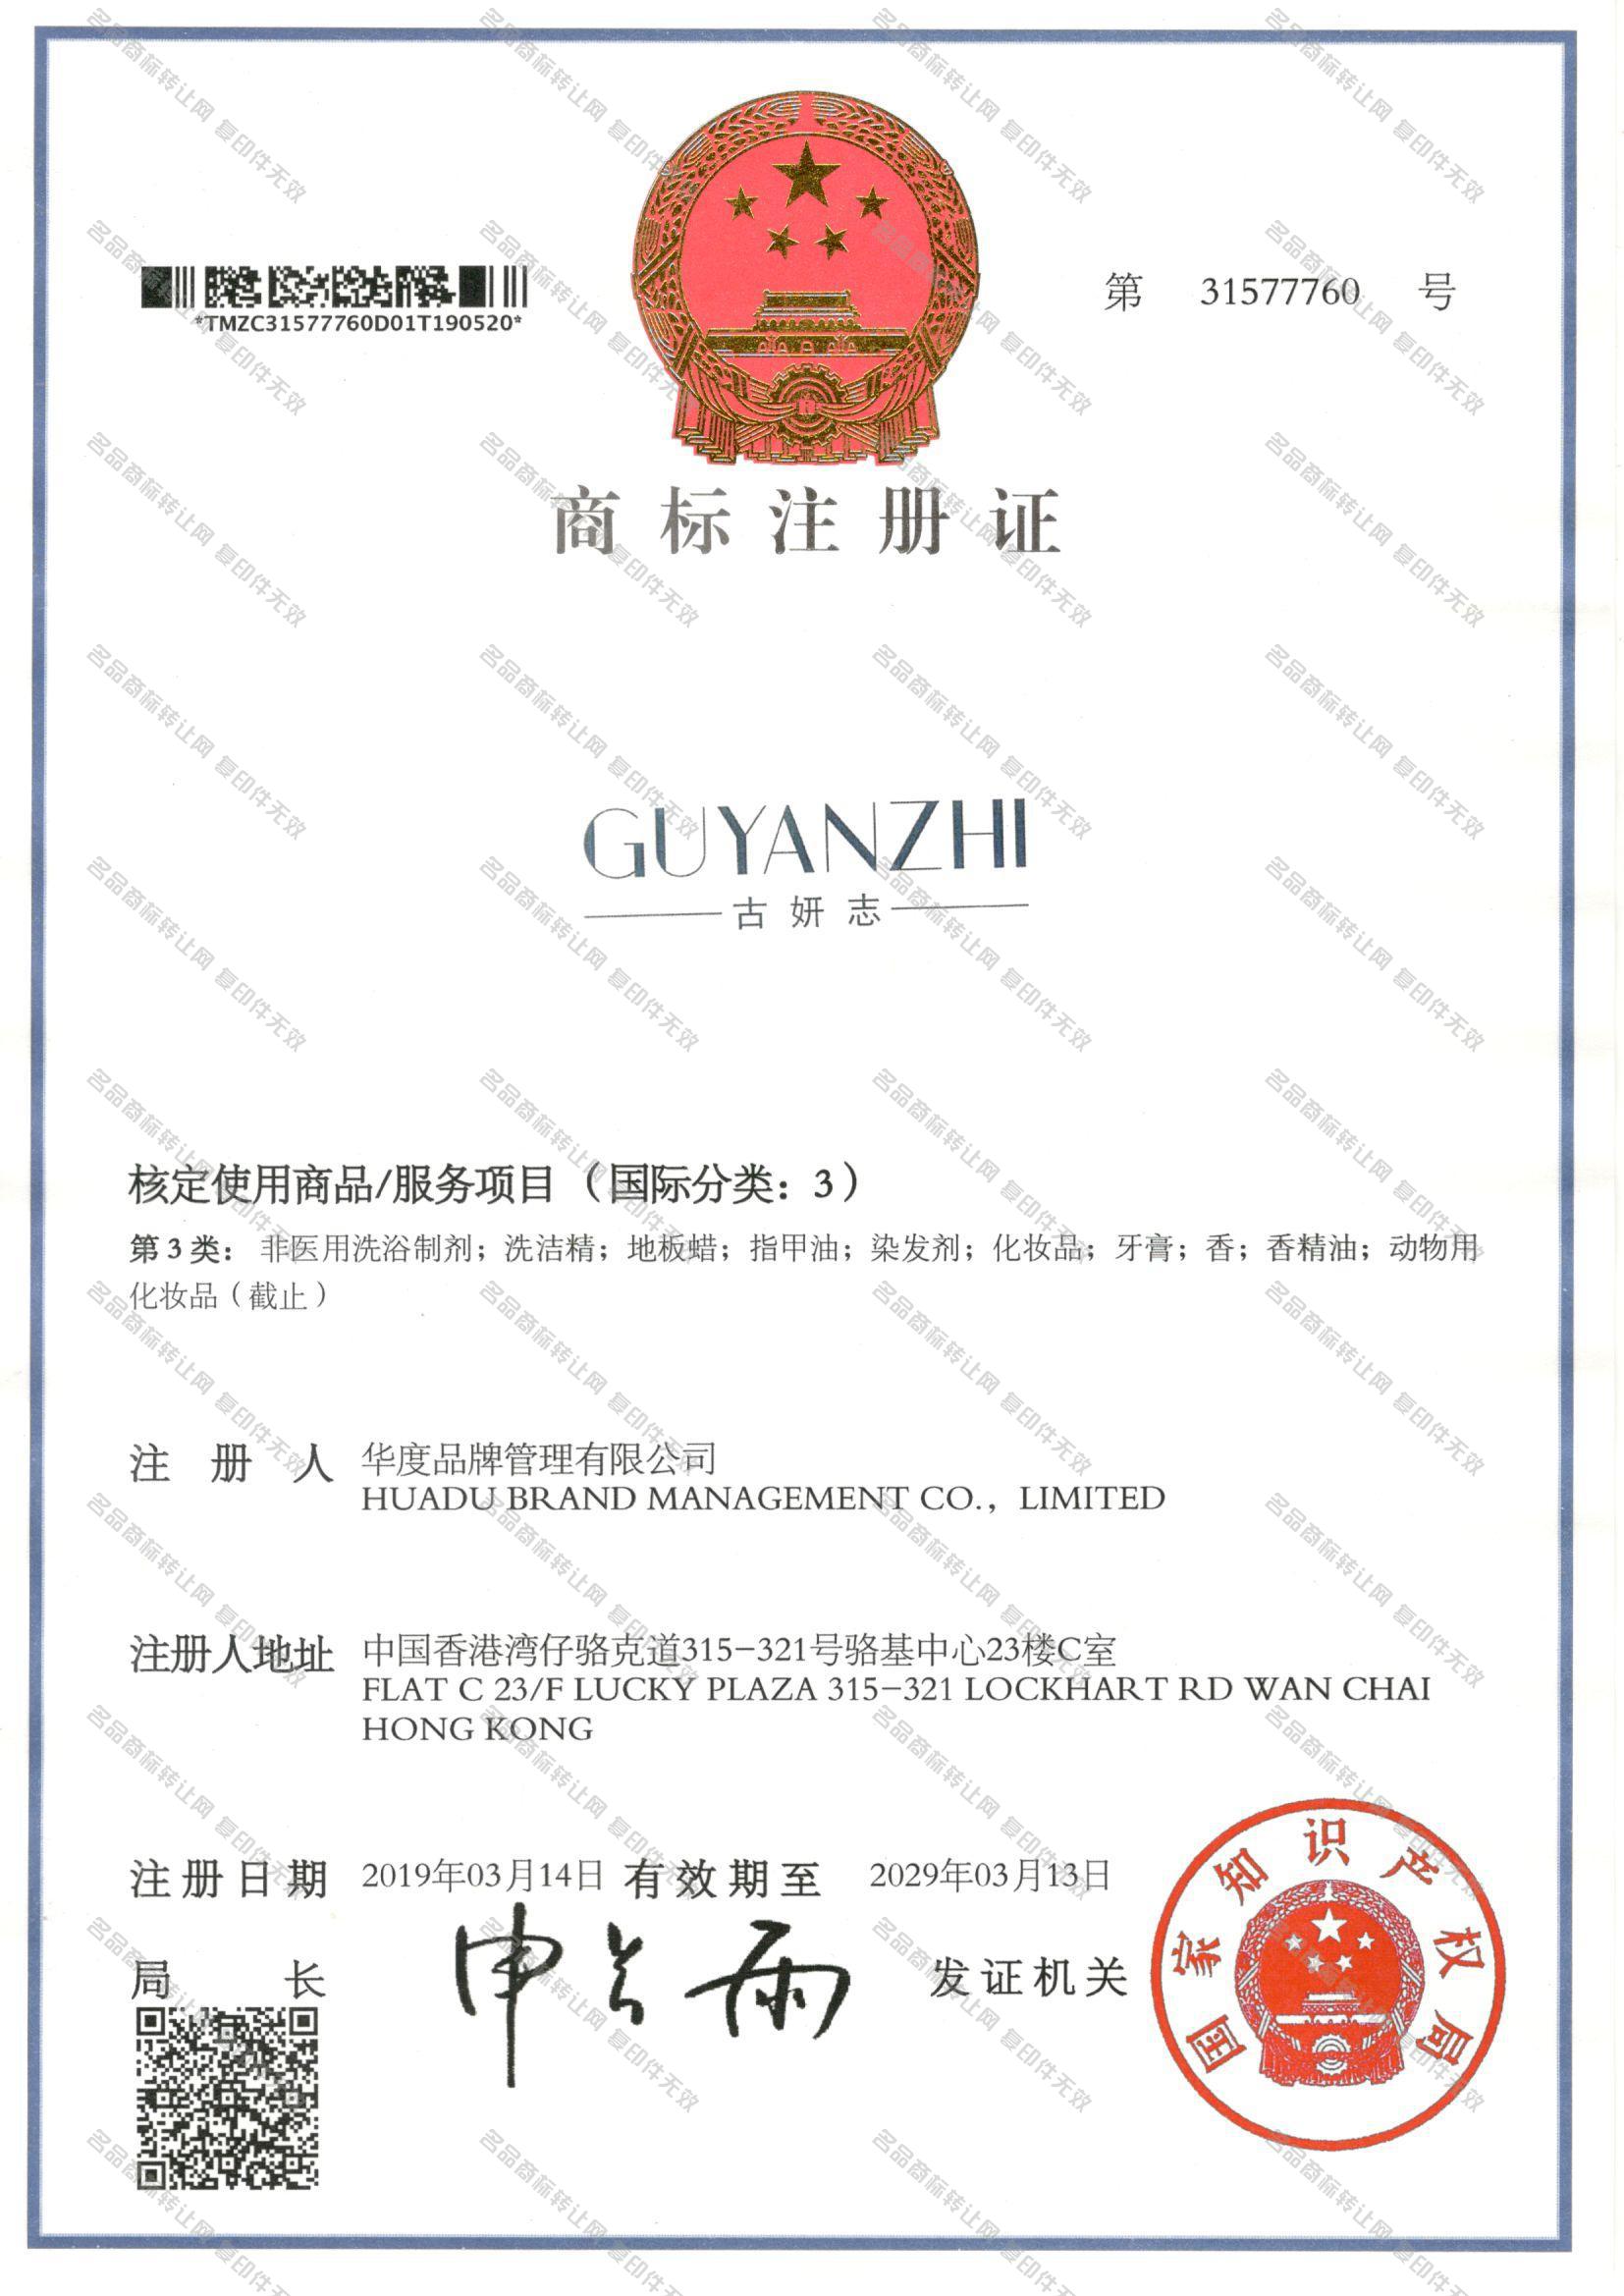 古妍志 GUYANZHI注册证